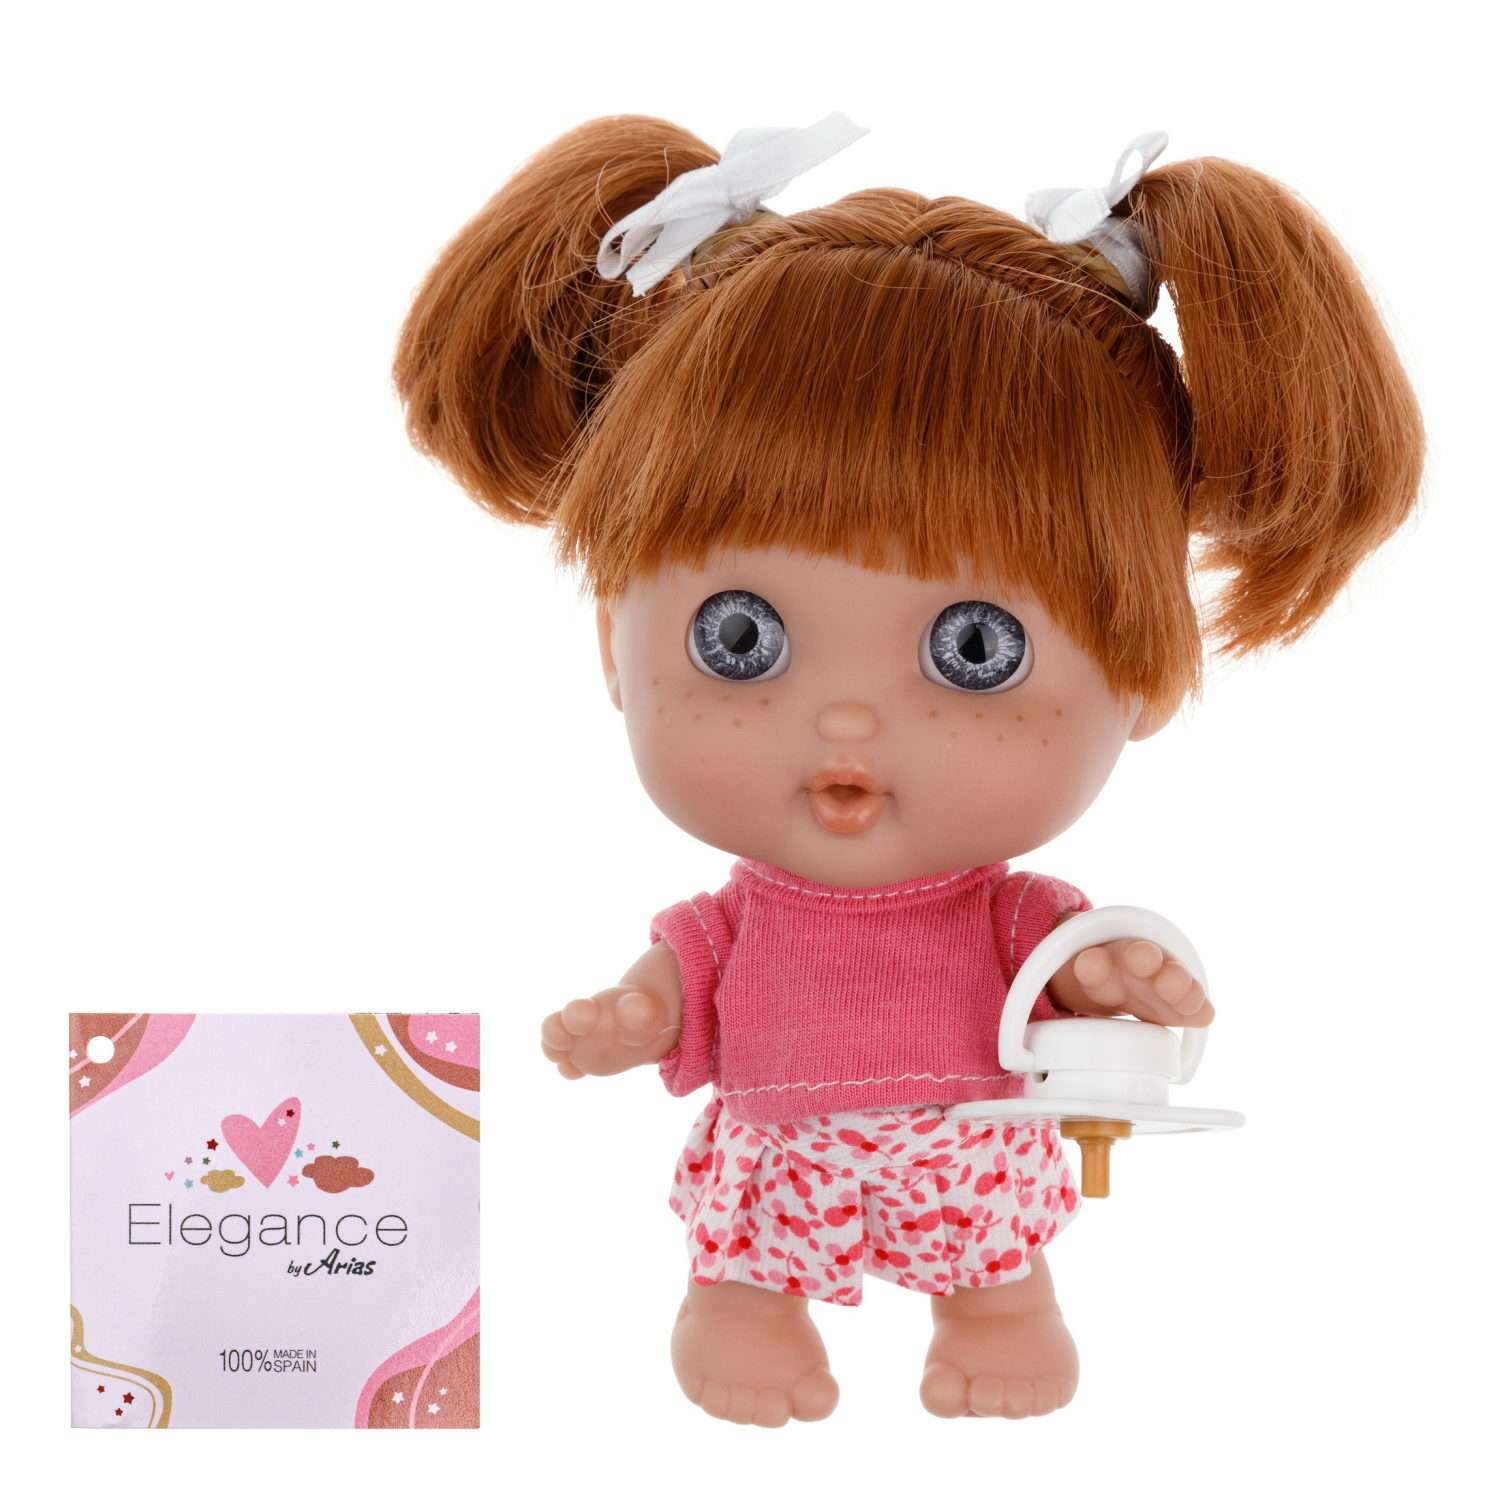 Кукла Arias elegance pequitas с рыжими волосами c cоской в юбке в цветочек и розовой кофточке 17 см Т19780-7 - фото 1